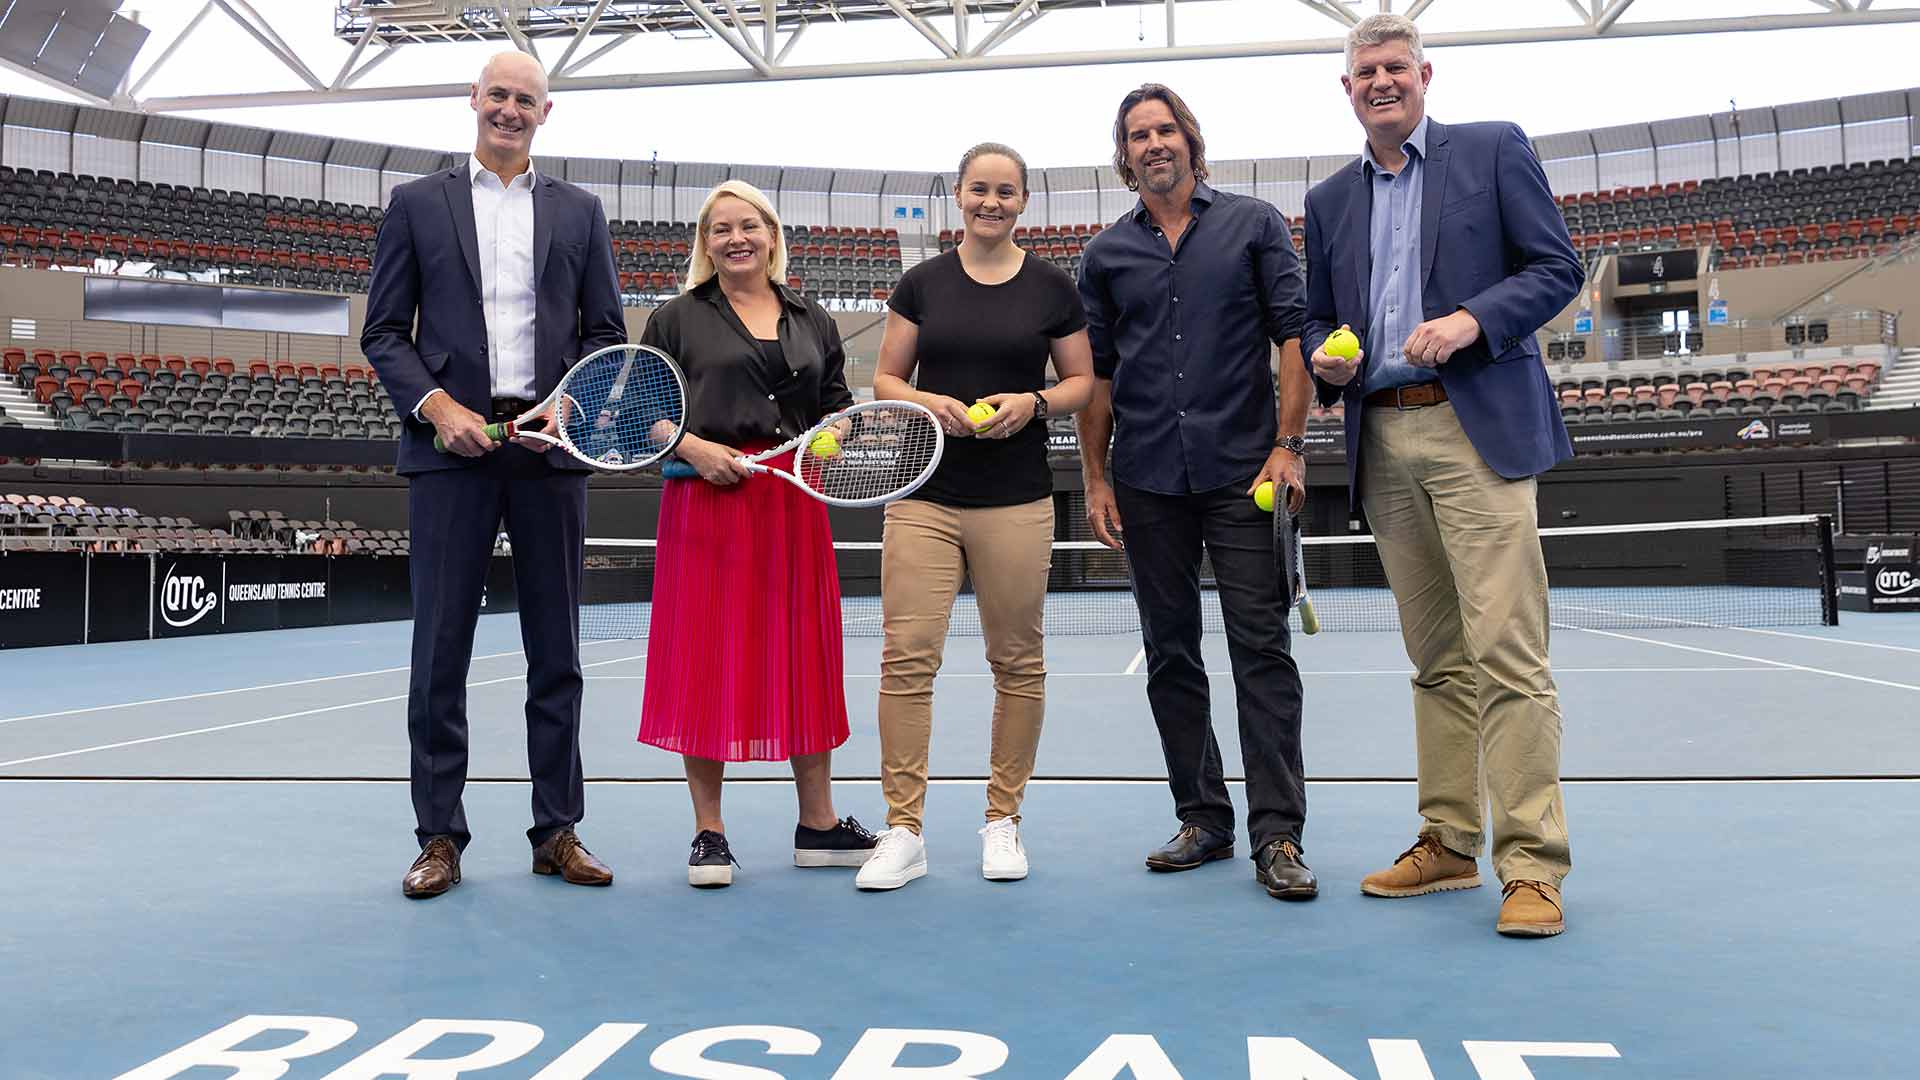  Brisbane International is een jaarlijks terugkerend tennistoernooi dat plaatsvindt in Brisbane, Australië. Het toernooi maakt deel uit van de ATP World Tour 250 series en de WTA Premier tournaments. Het wordt gespeeld op hardcourtbanen en trekt elk jaar enkele van de beste tennisspelers en -speelsters ter wereld aan. Het toernooi is opgericht in 